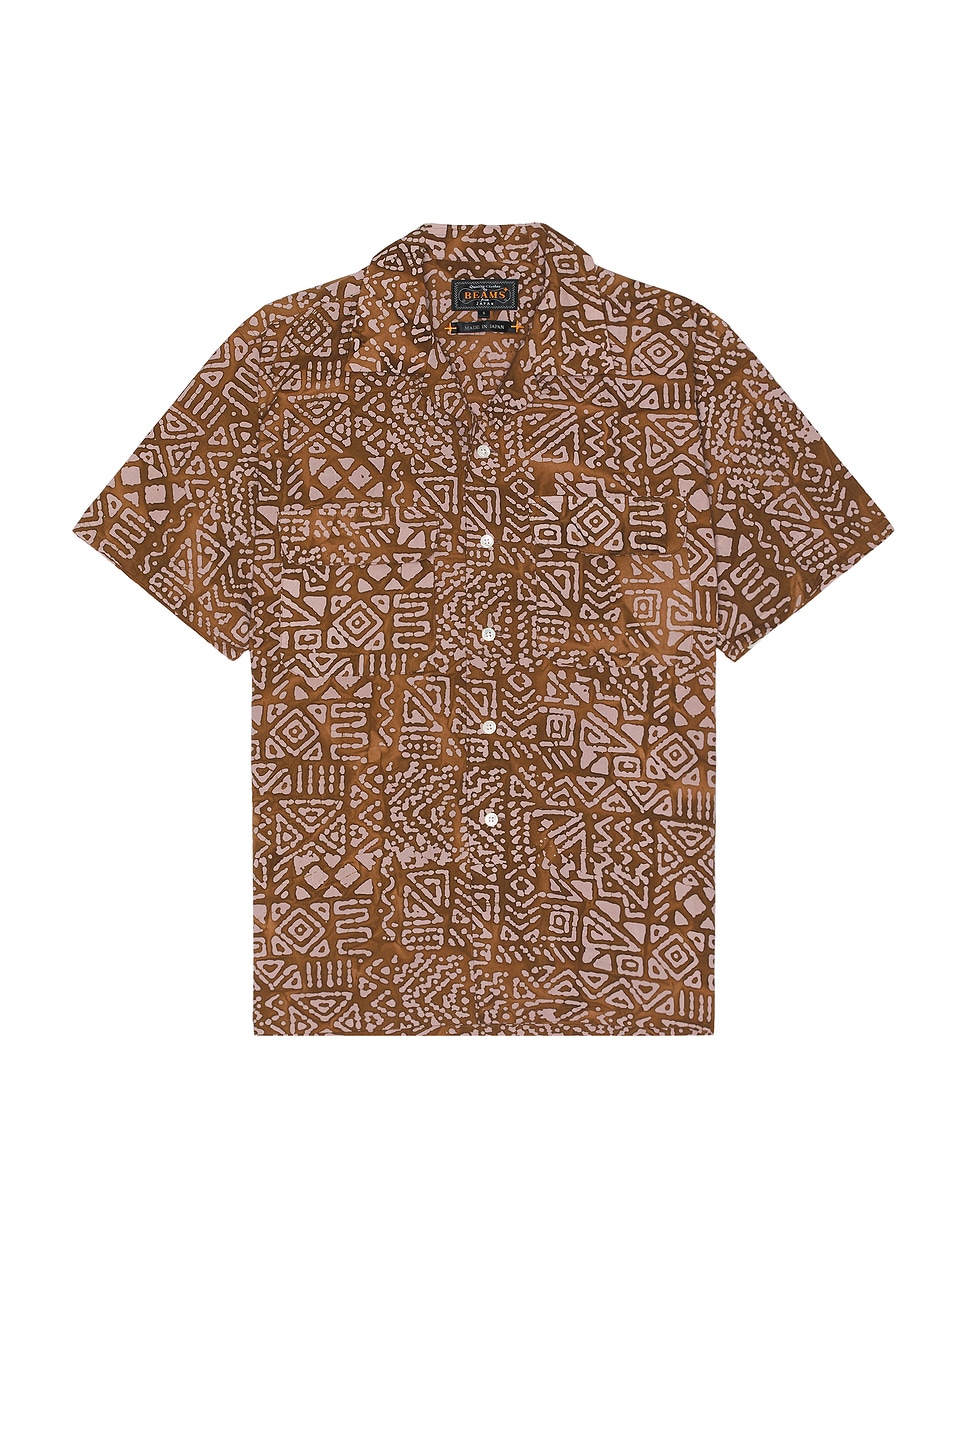 Image 1 of Beams Plus Open Collar Batik Print in Brown